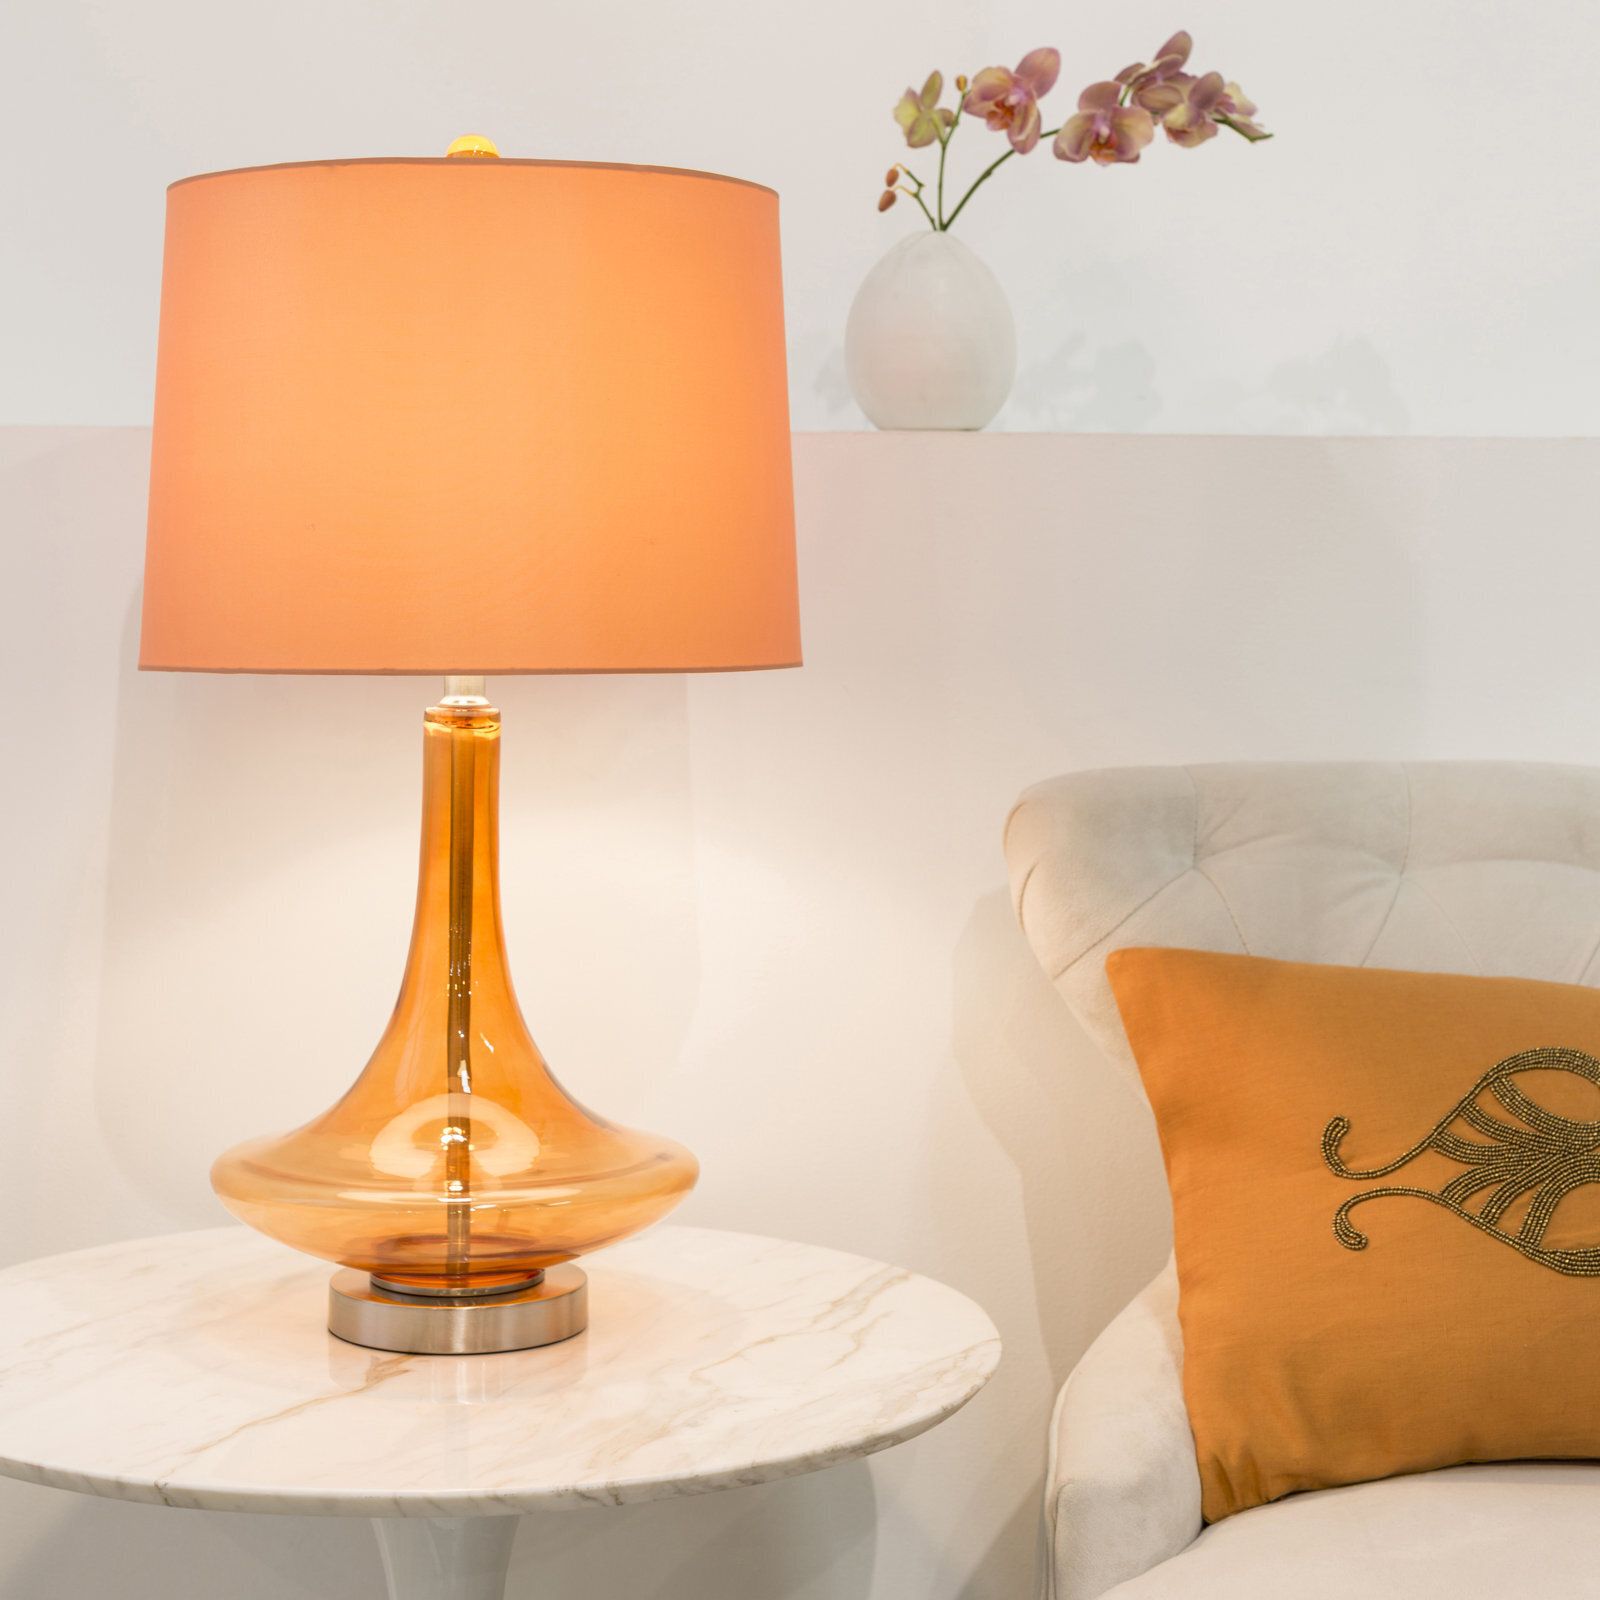 Stylish orange glass table lamp